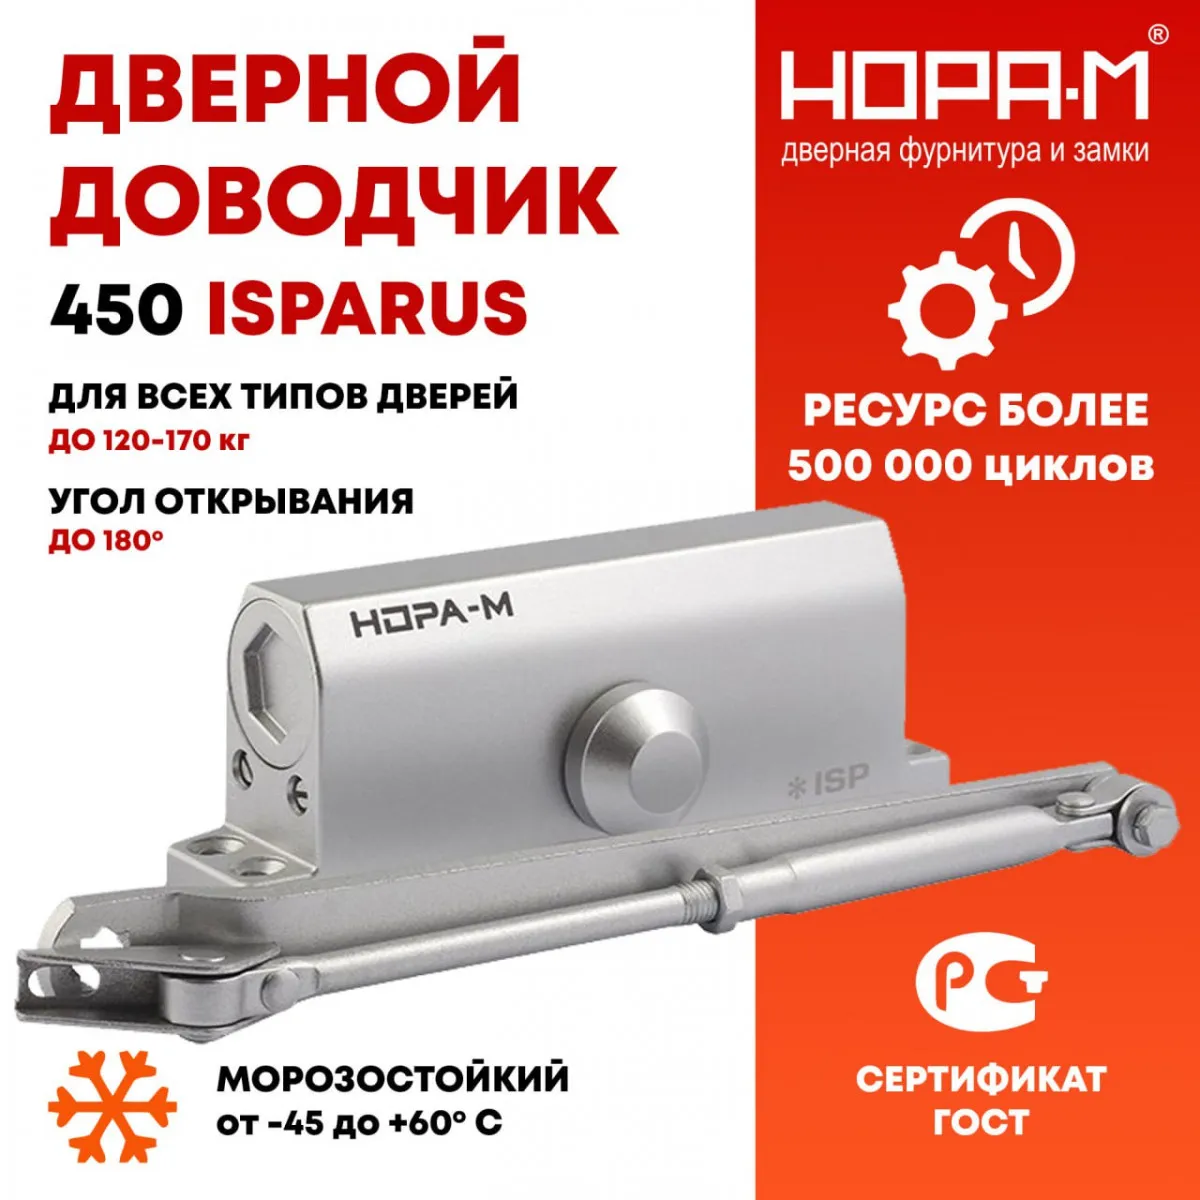 Доводчик дверной 450 ISPARUS от 120 до 170 кг от российской компании НОРА М.#1